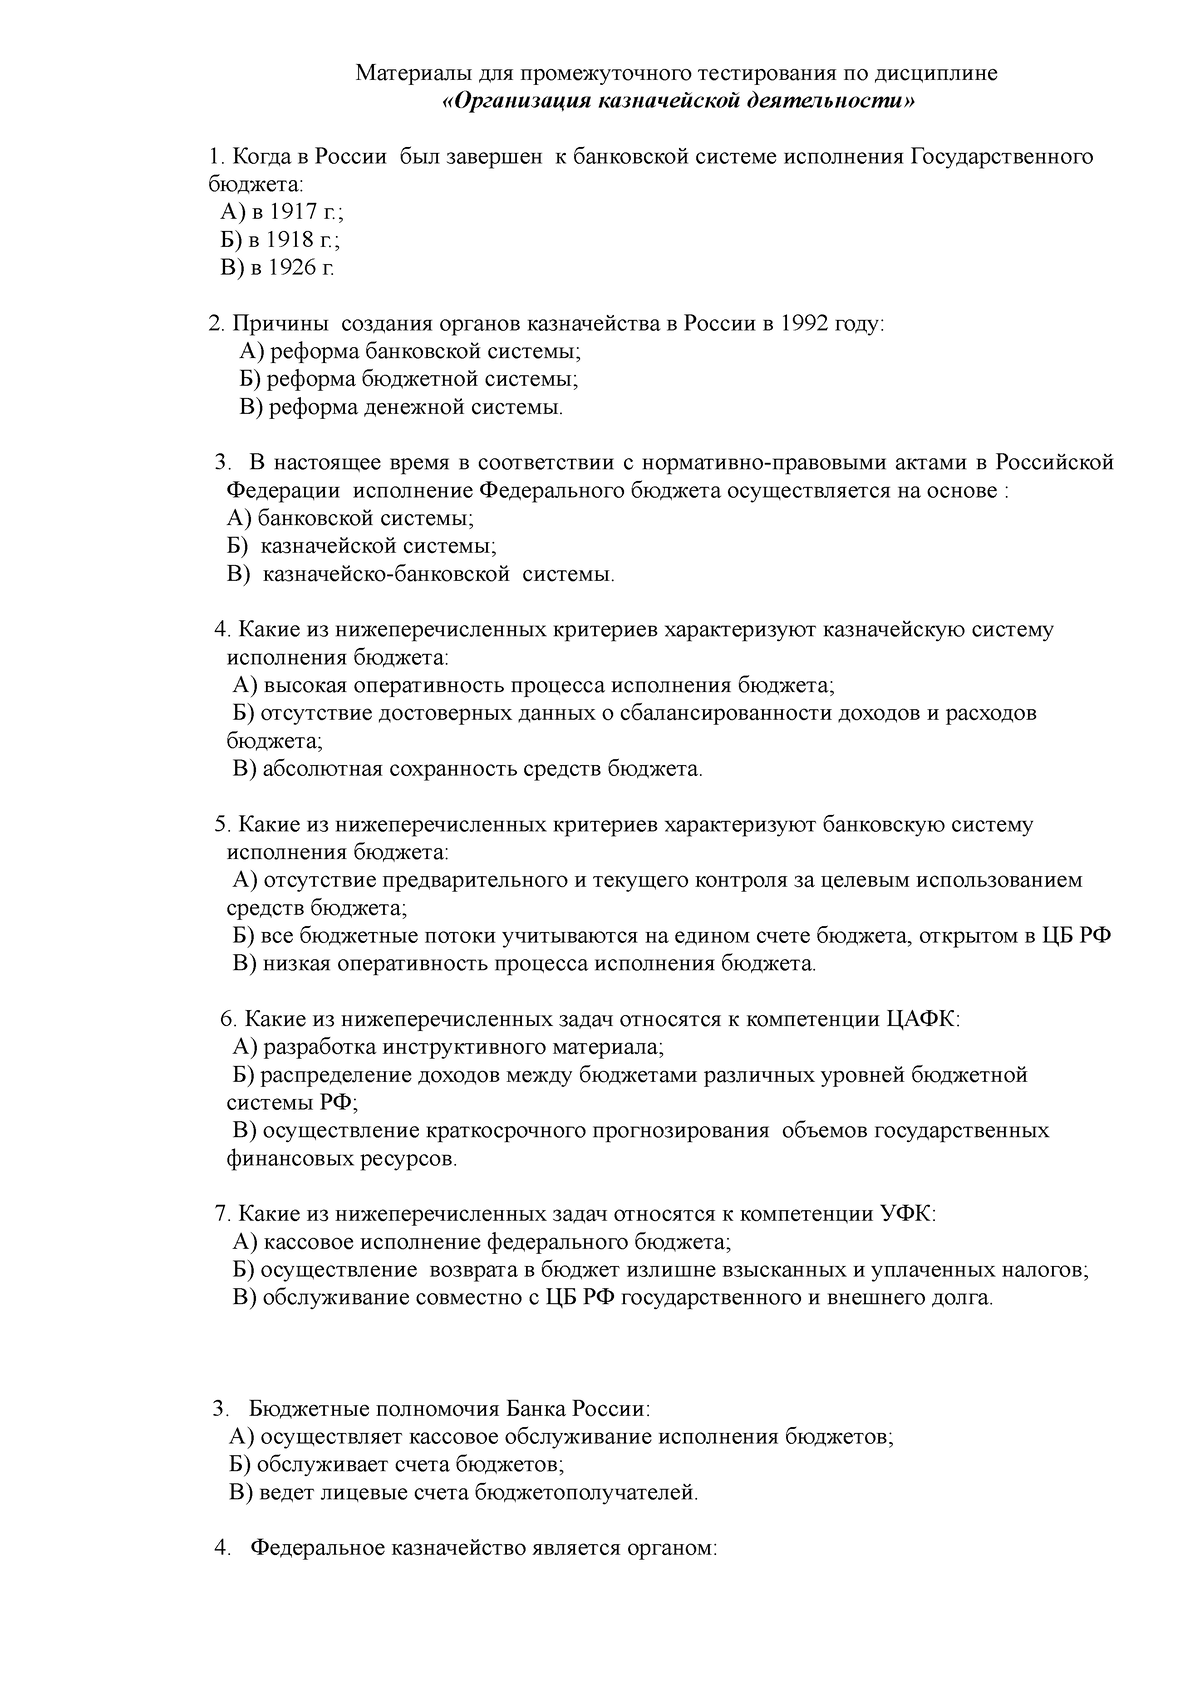 Дипломная работа: Организация исполнения расходов на разных уровнях бюджетной системы РФ